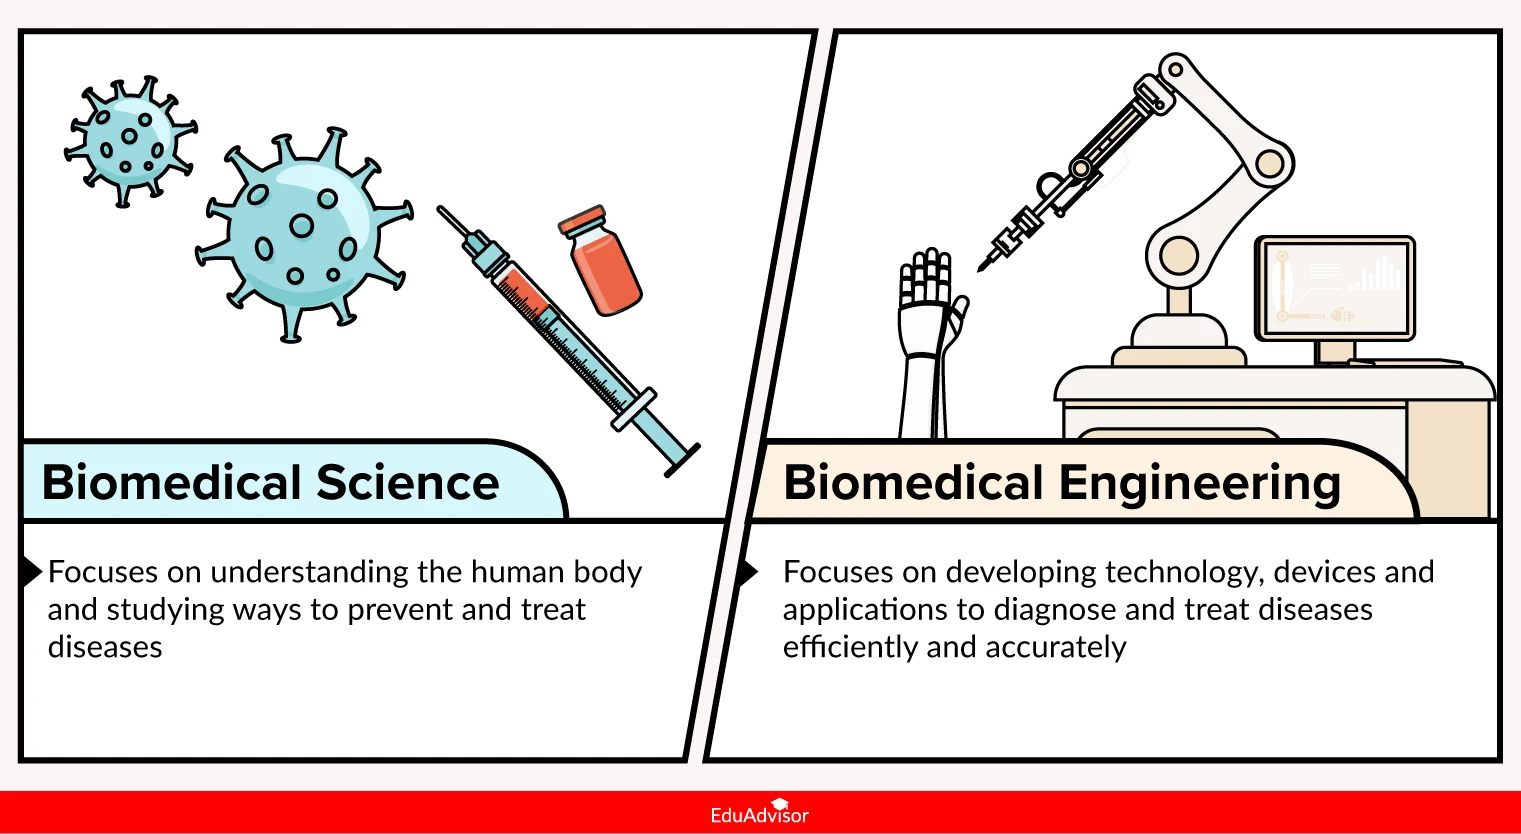 biomed-science-vs-biomed-engineering-what